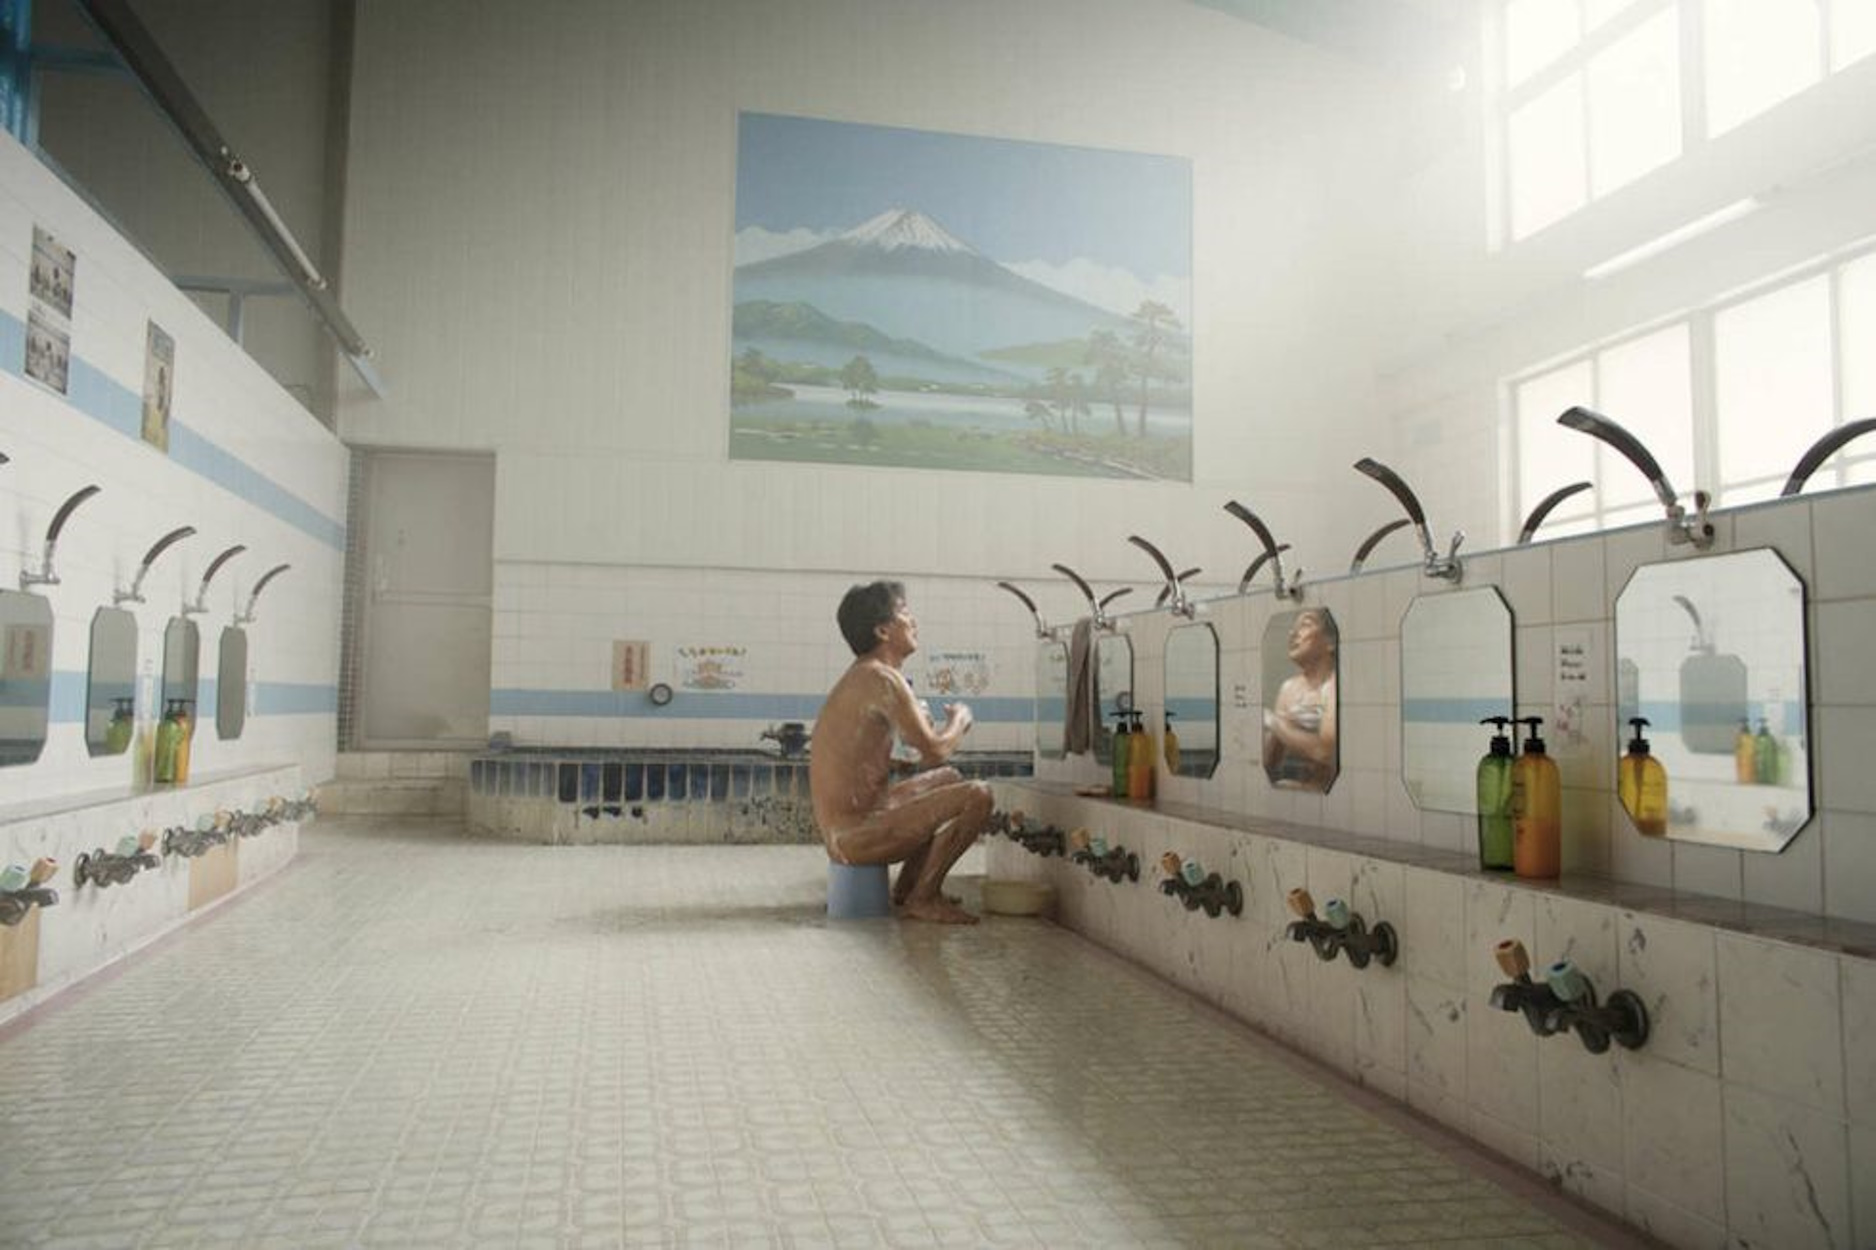 Ir a ver una película sobre los lavabos de Tokio y descubrir una obra de arte